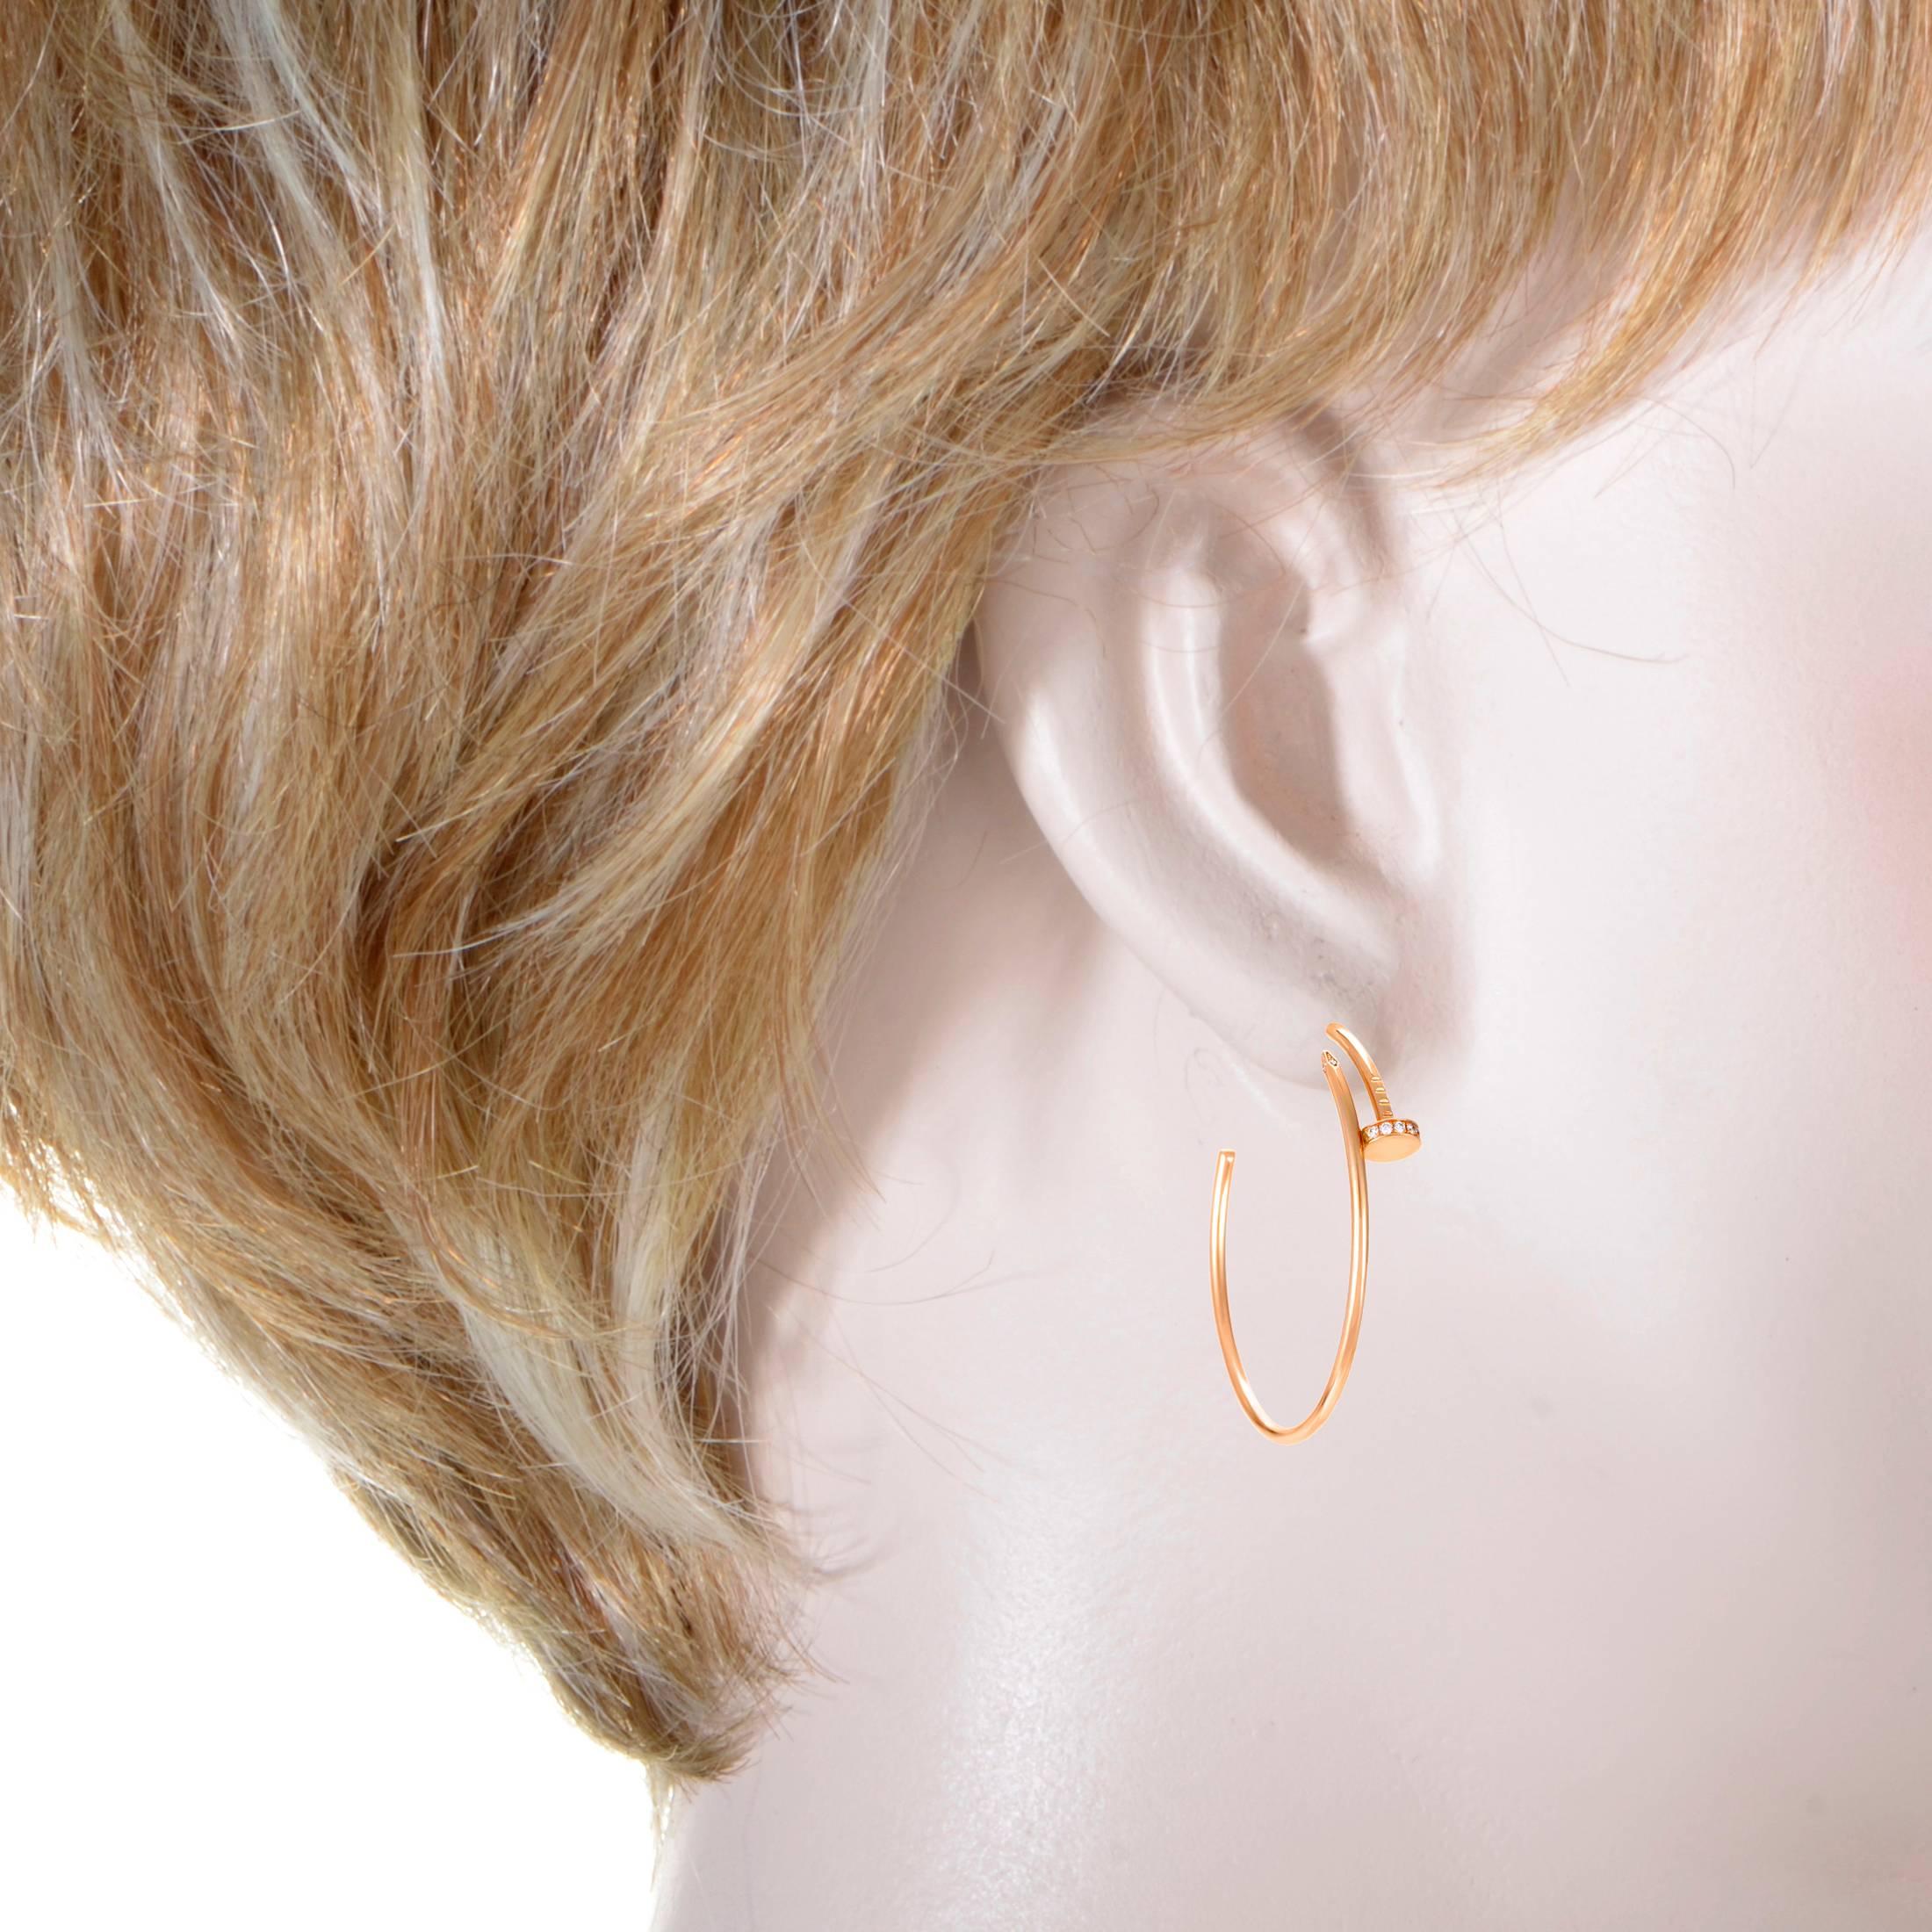 cartier nail hoop earrings